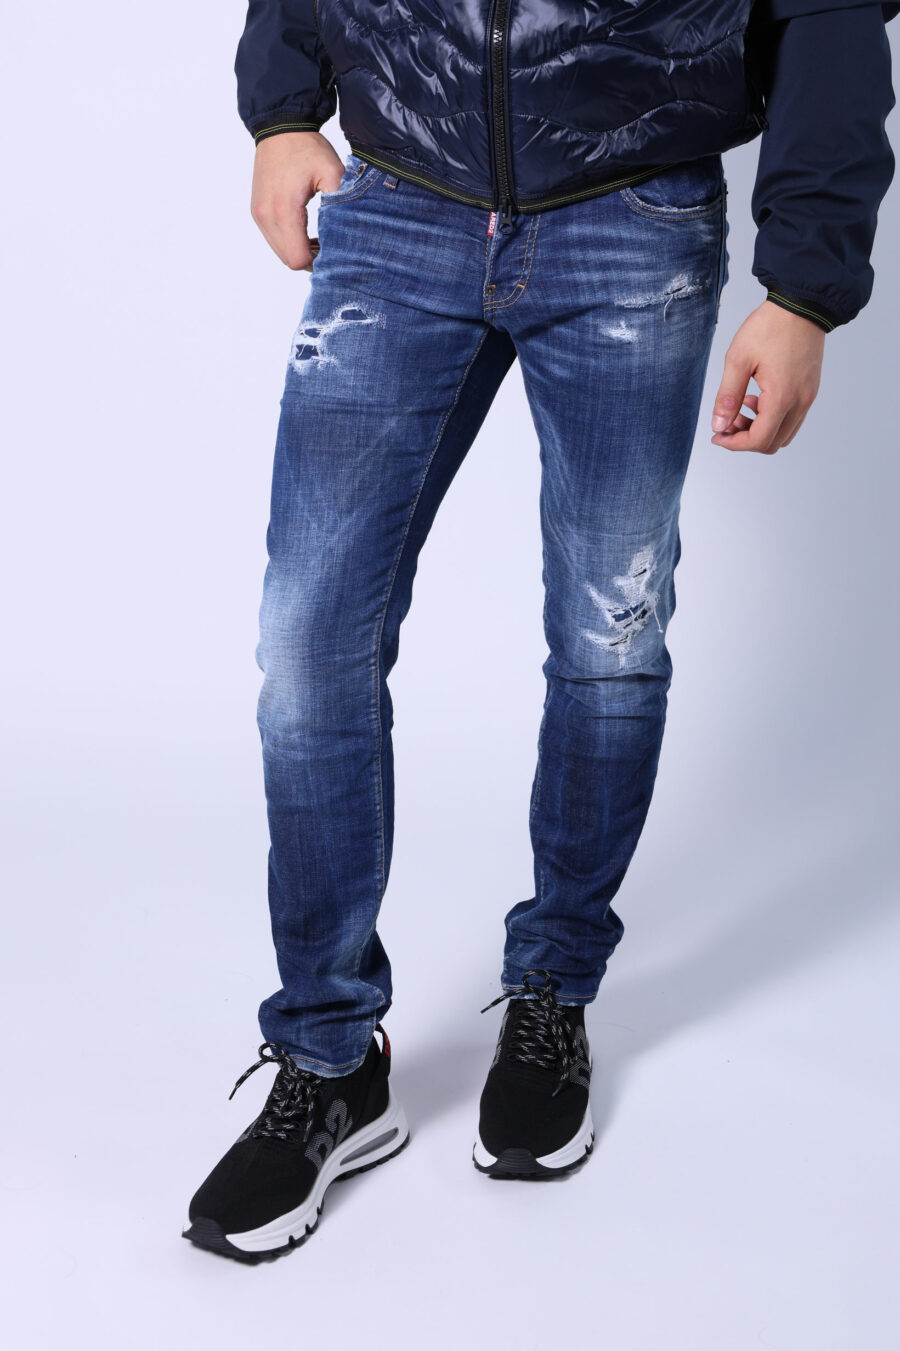 Pantalón vaquero "Slim jean" azul semi desgastado con rotos - Untitled Catalog 05530